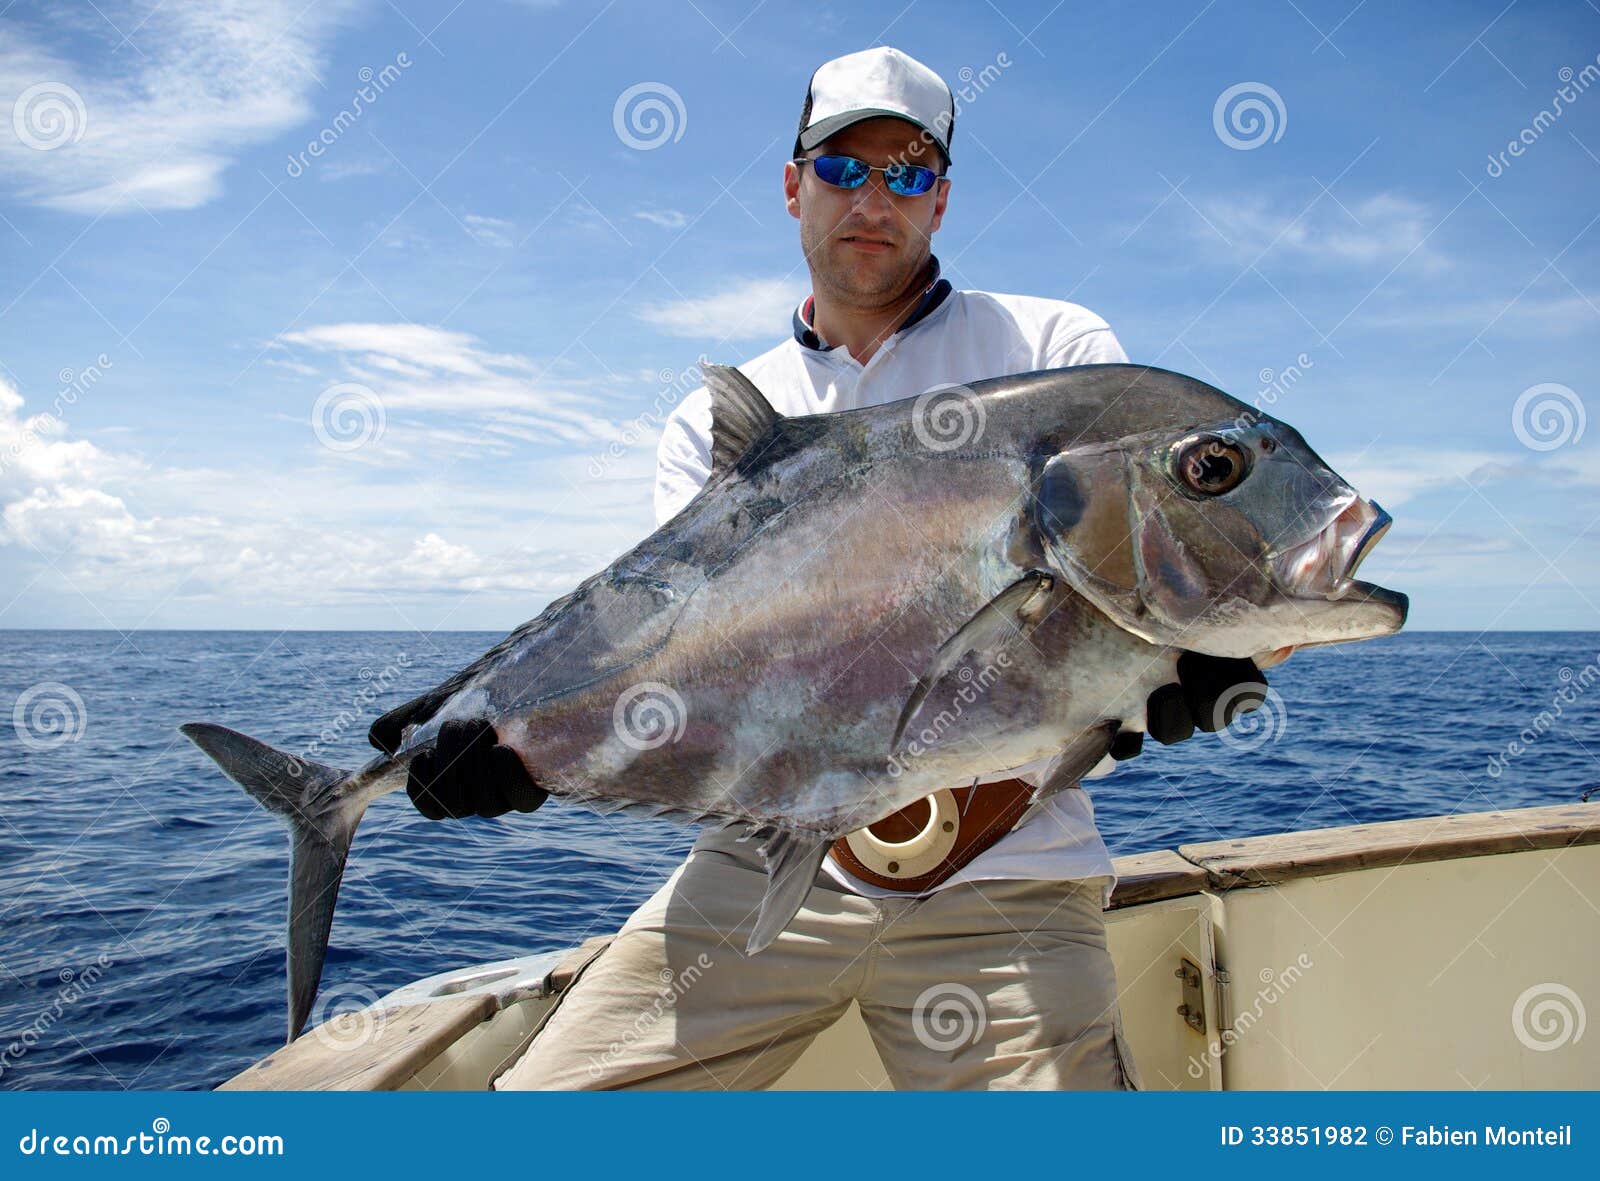 Jack mackerel stock photos